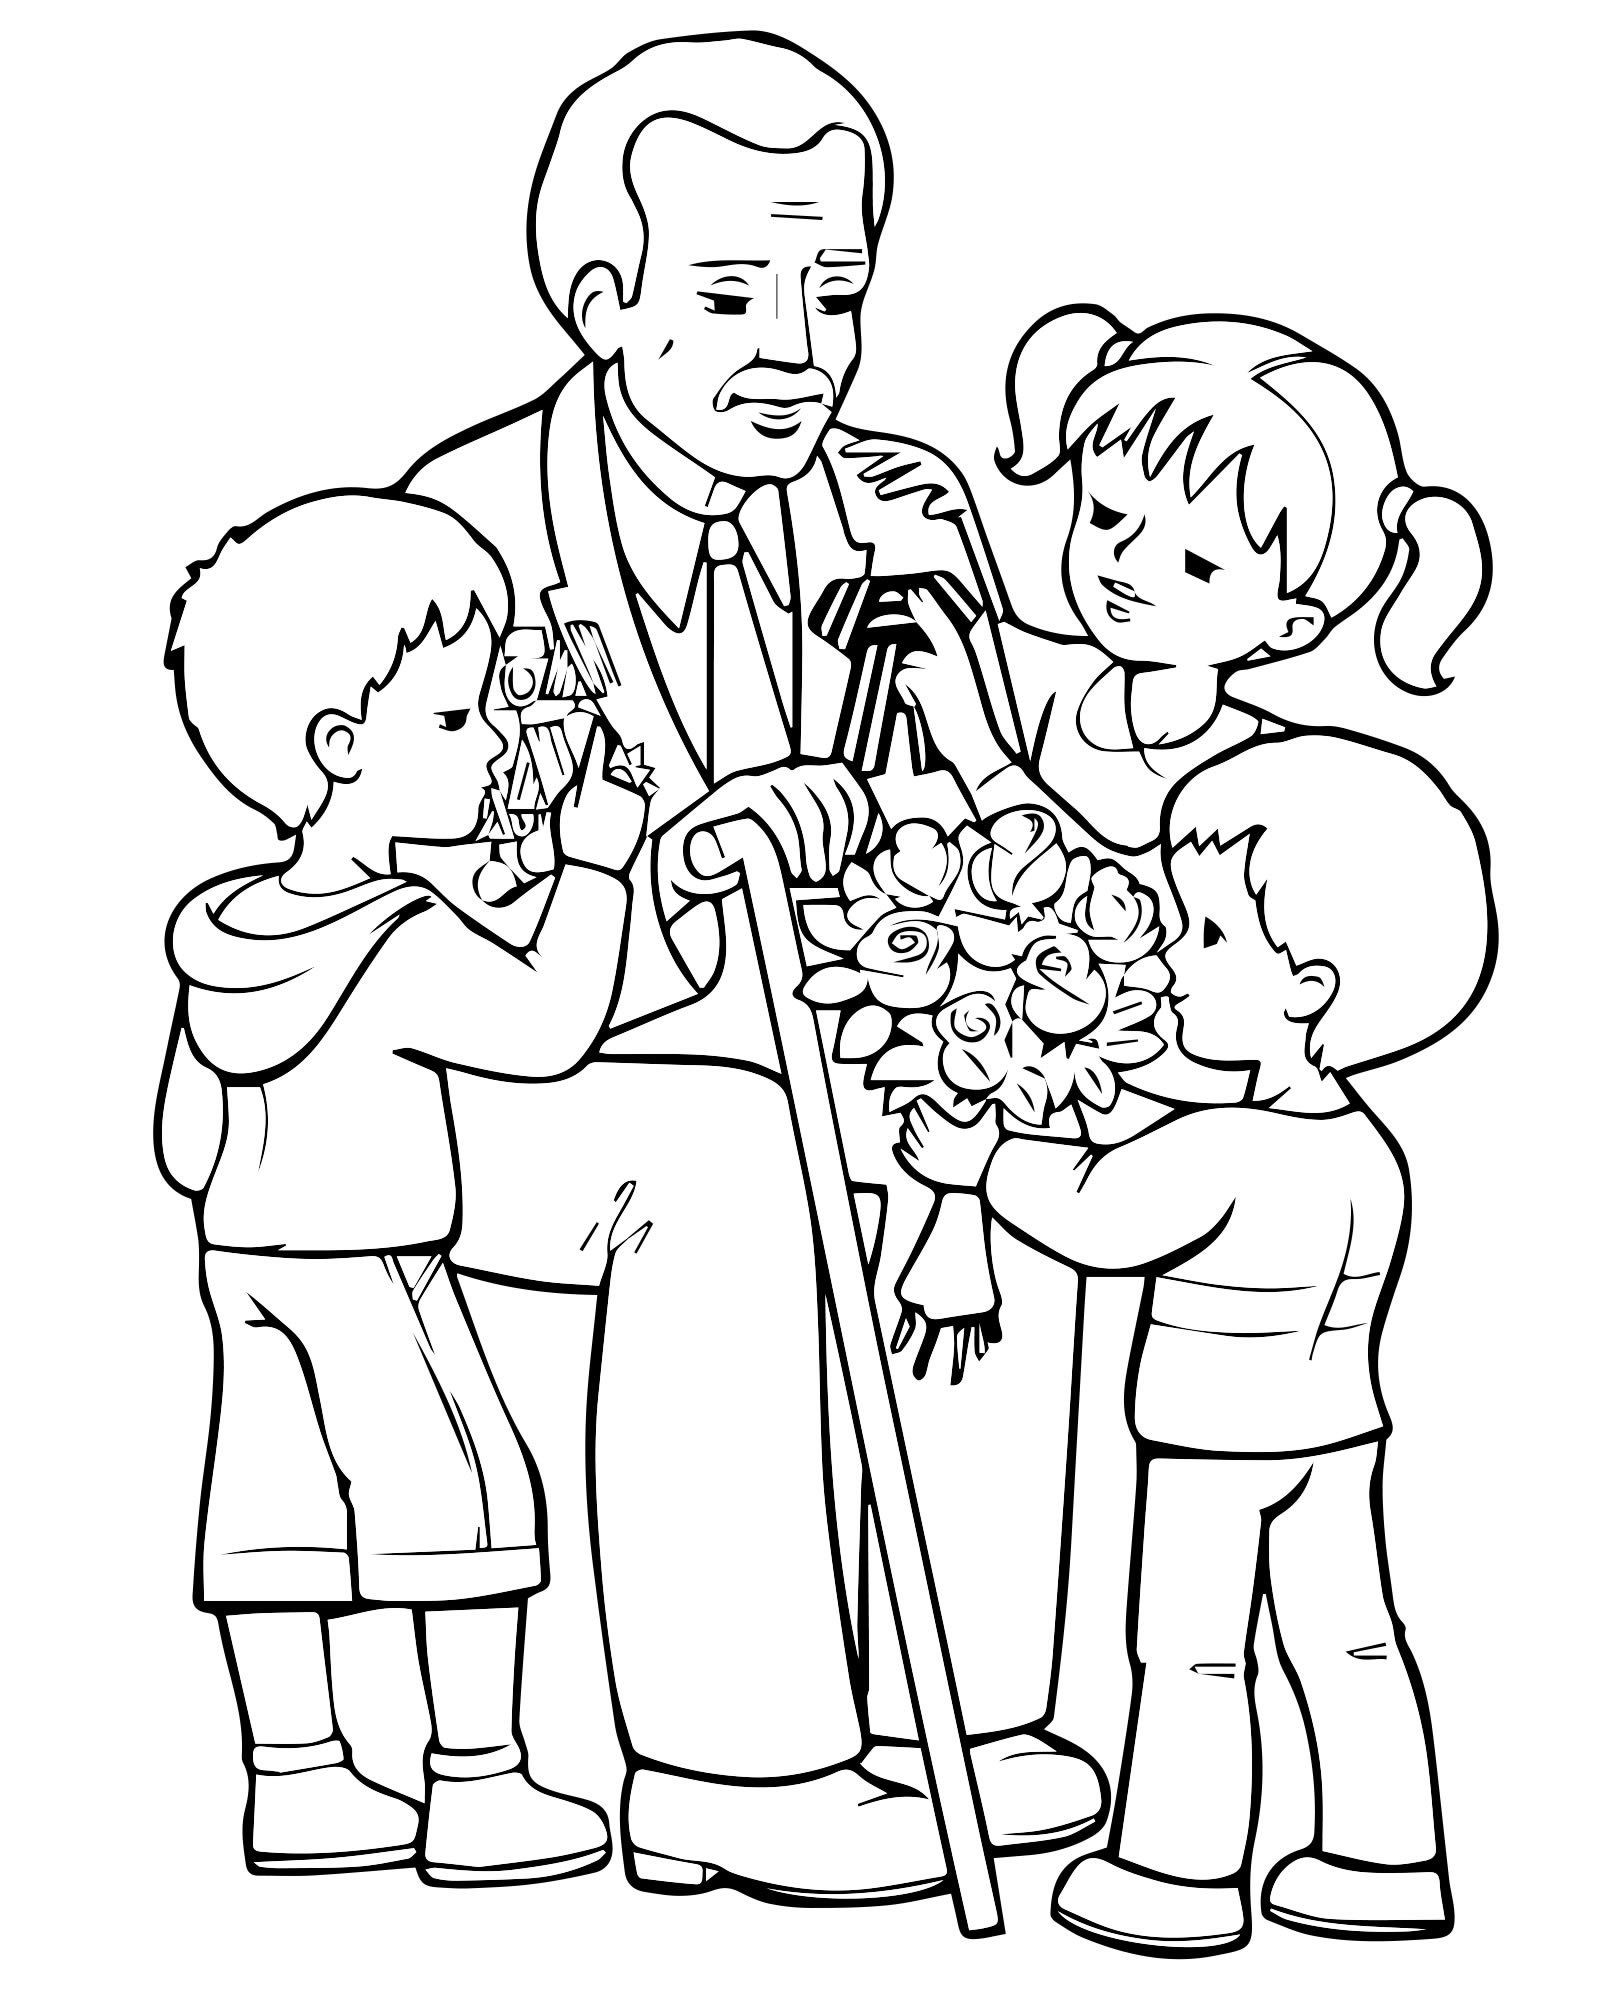 1 мая бабушке. Рисунок ко Дню пожилого человека. Ветеран раскраска для детей. Дедушка раскраска для детей. Рисунок на день пожилых.